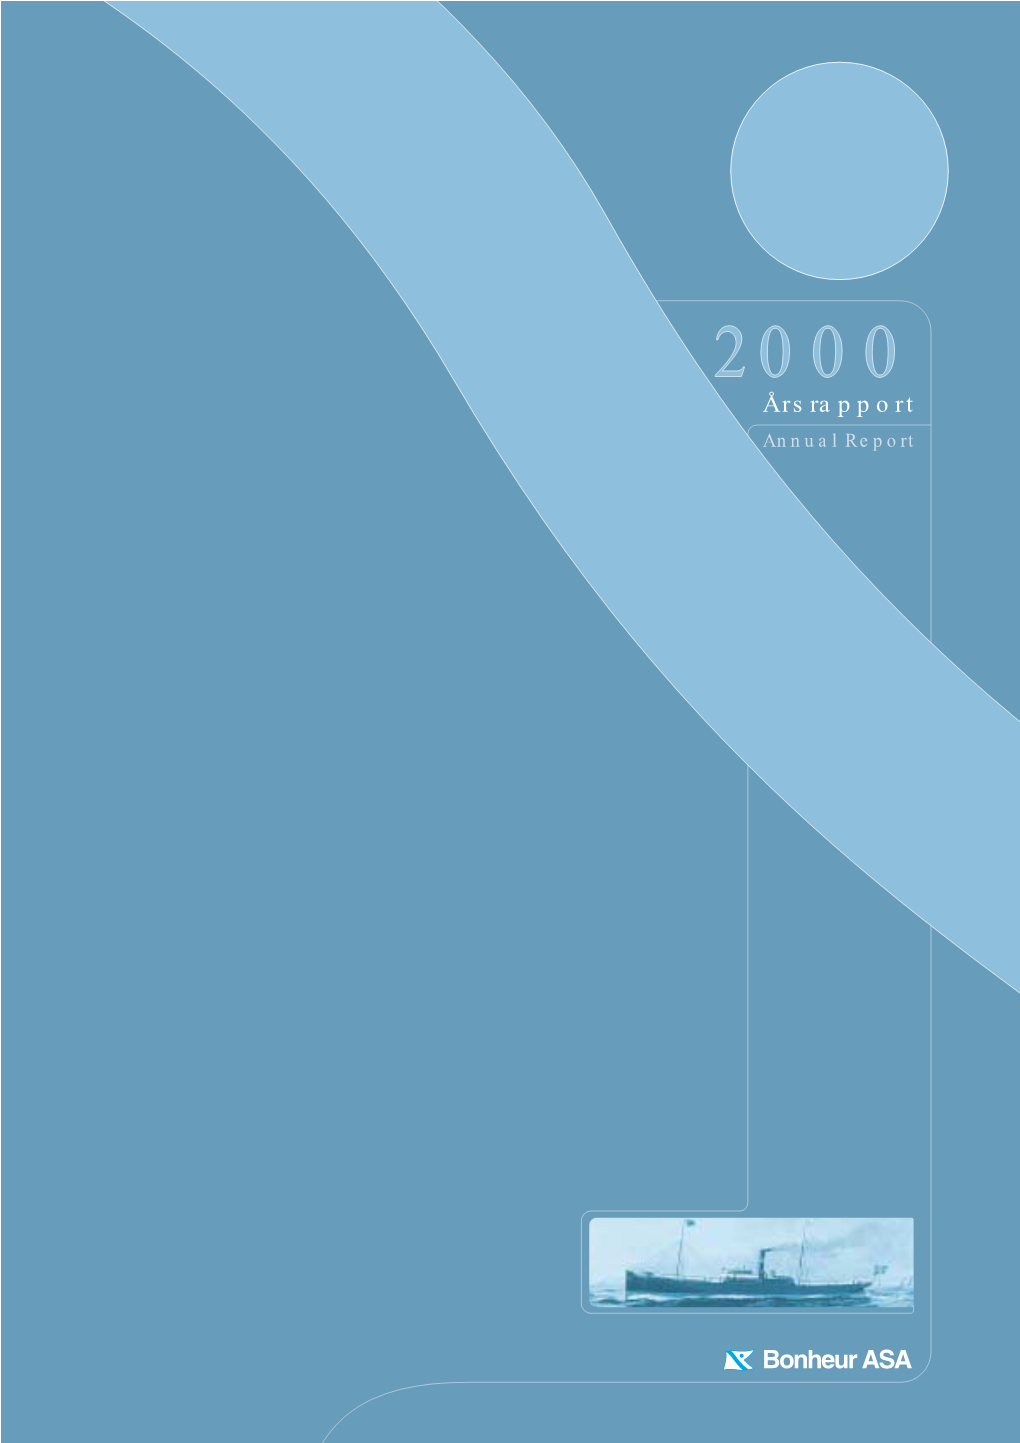 Årsrapport Annual Report Bonheur ASA – Introduksjon ASA Bonheur Cruisevirksomheten Gikk Med Overskudd I 2000